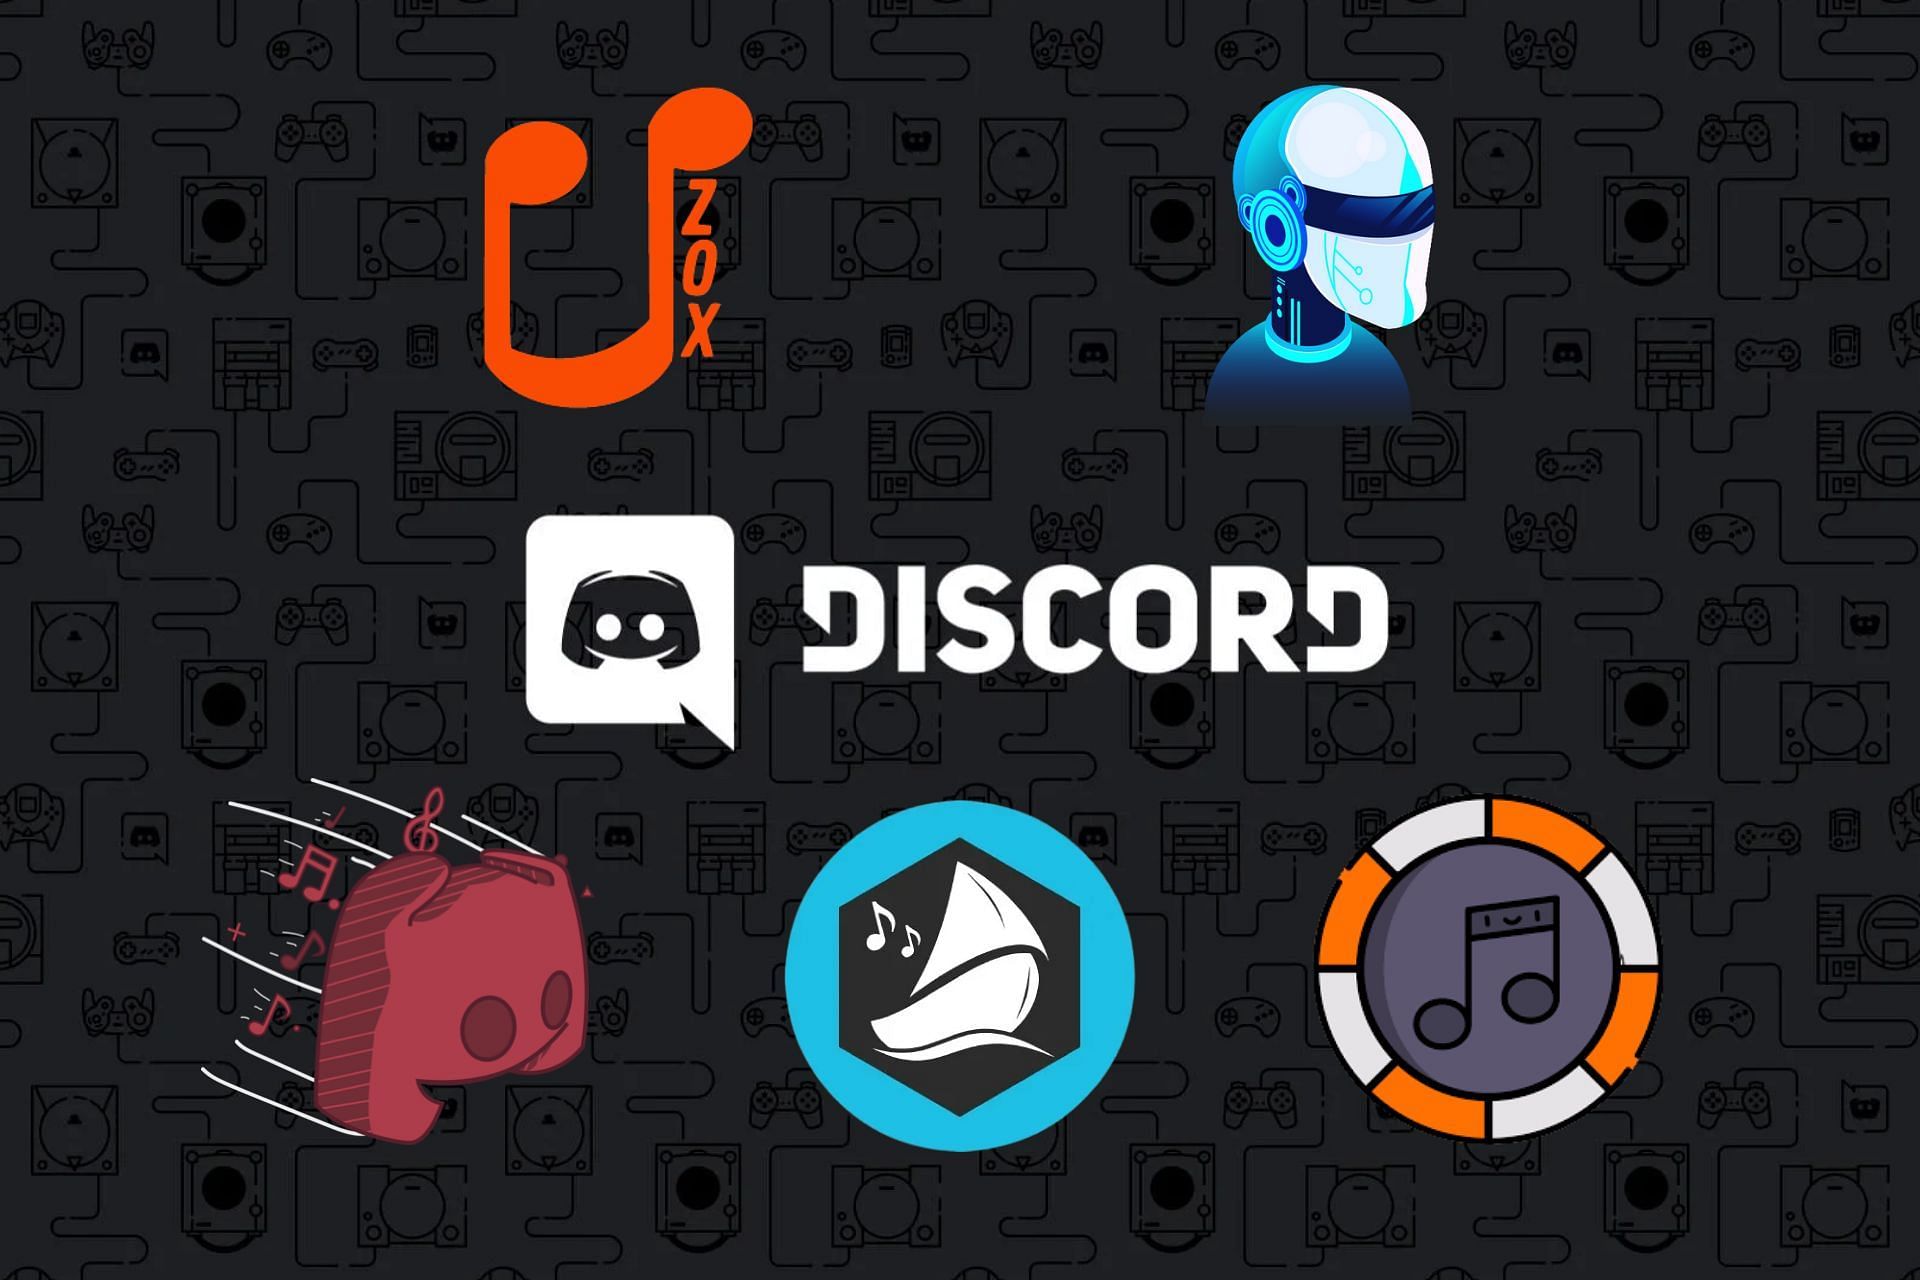 Css discord. Музыкальный бот. Discord bots. Лучшие боты для Дискорд. Music bot discord.